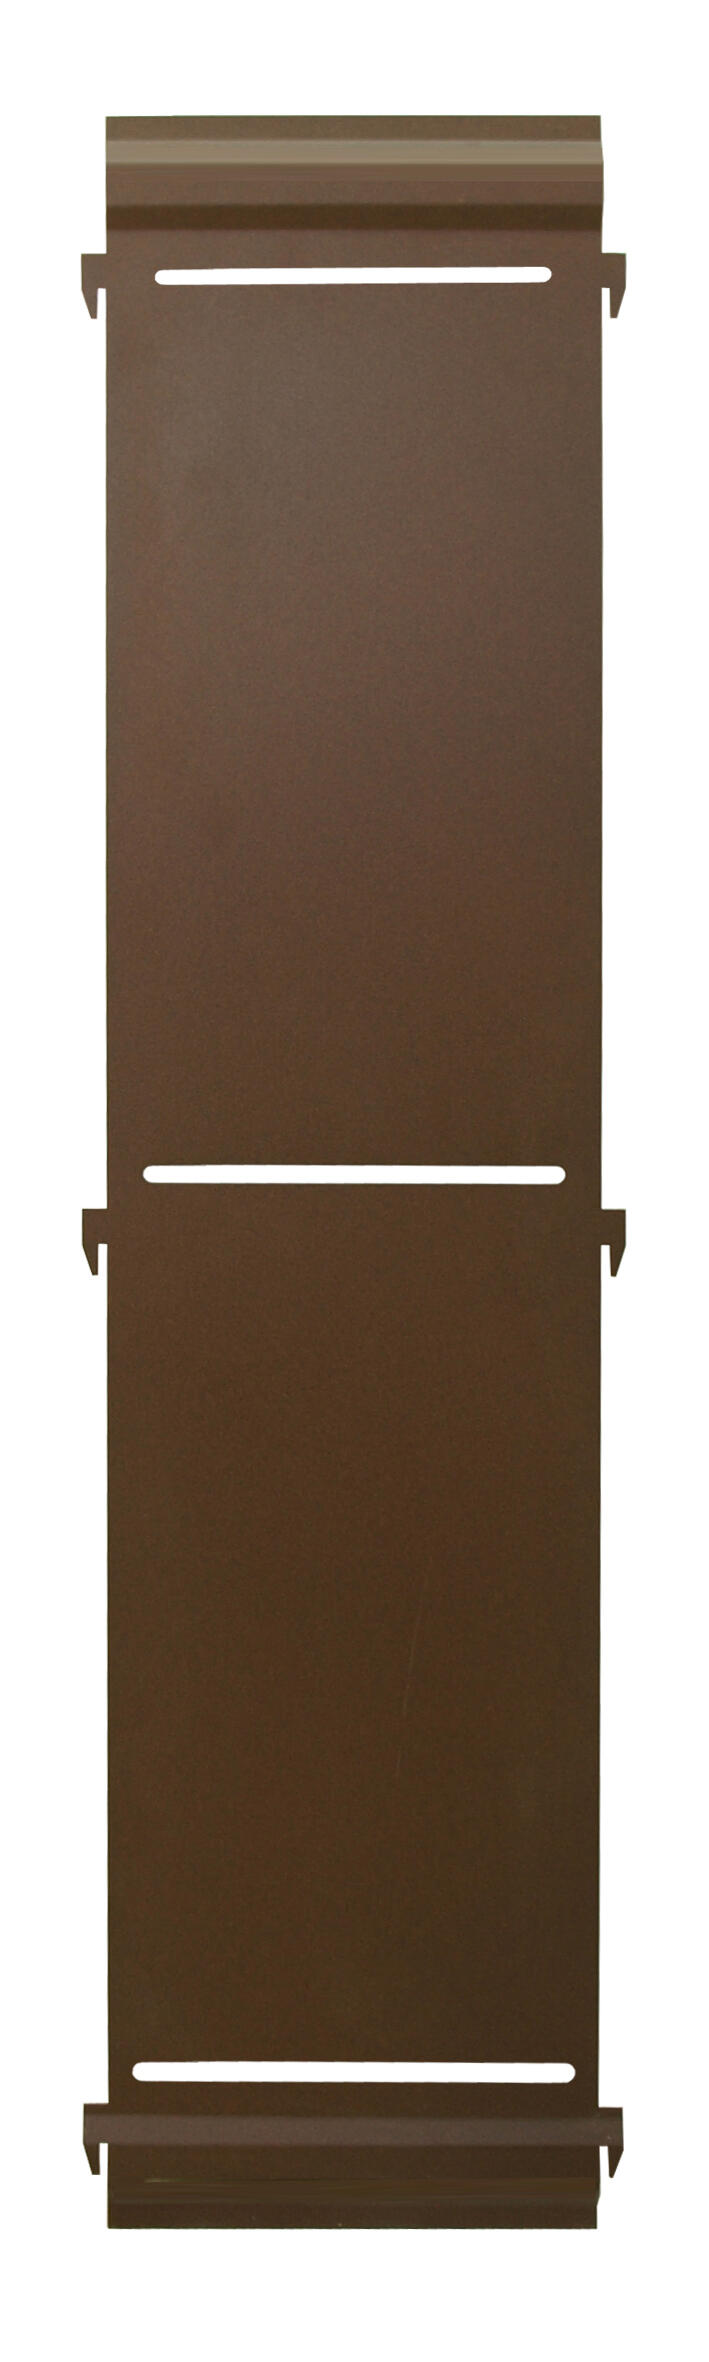 Panel remate valla acero galvanizado ciego marrón 94x20 cm